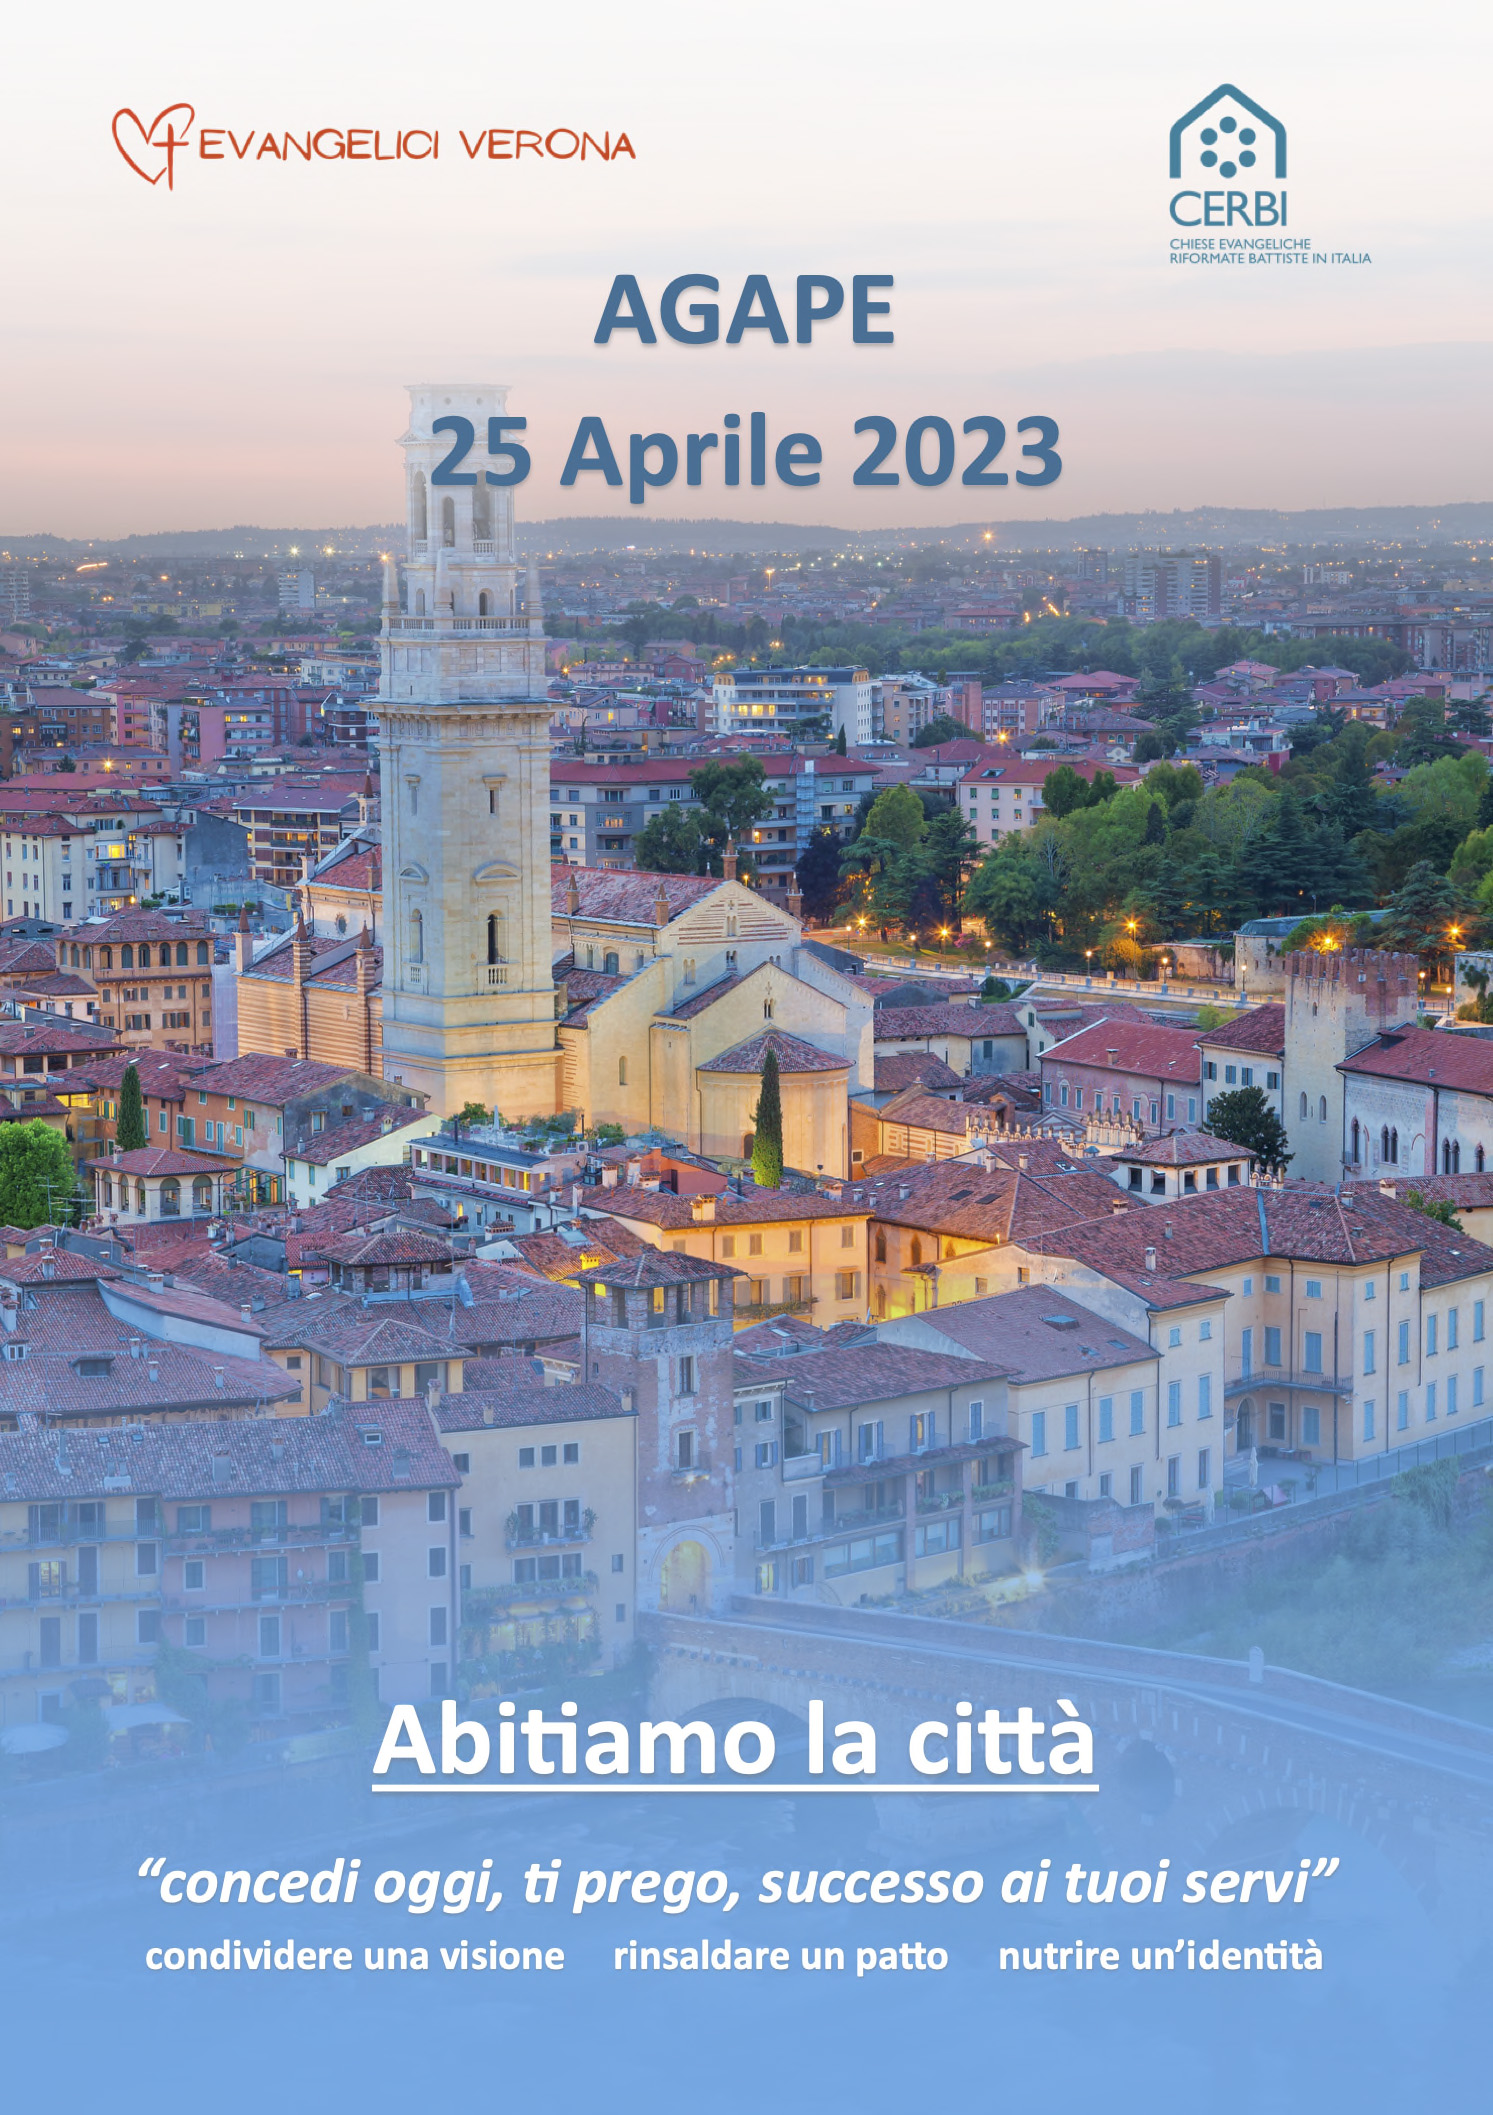 Agape 25 Aprile 2023 Evangelici Verona